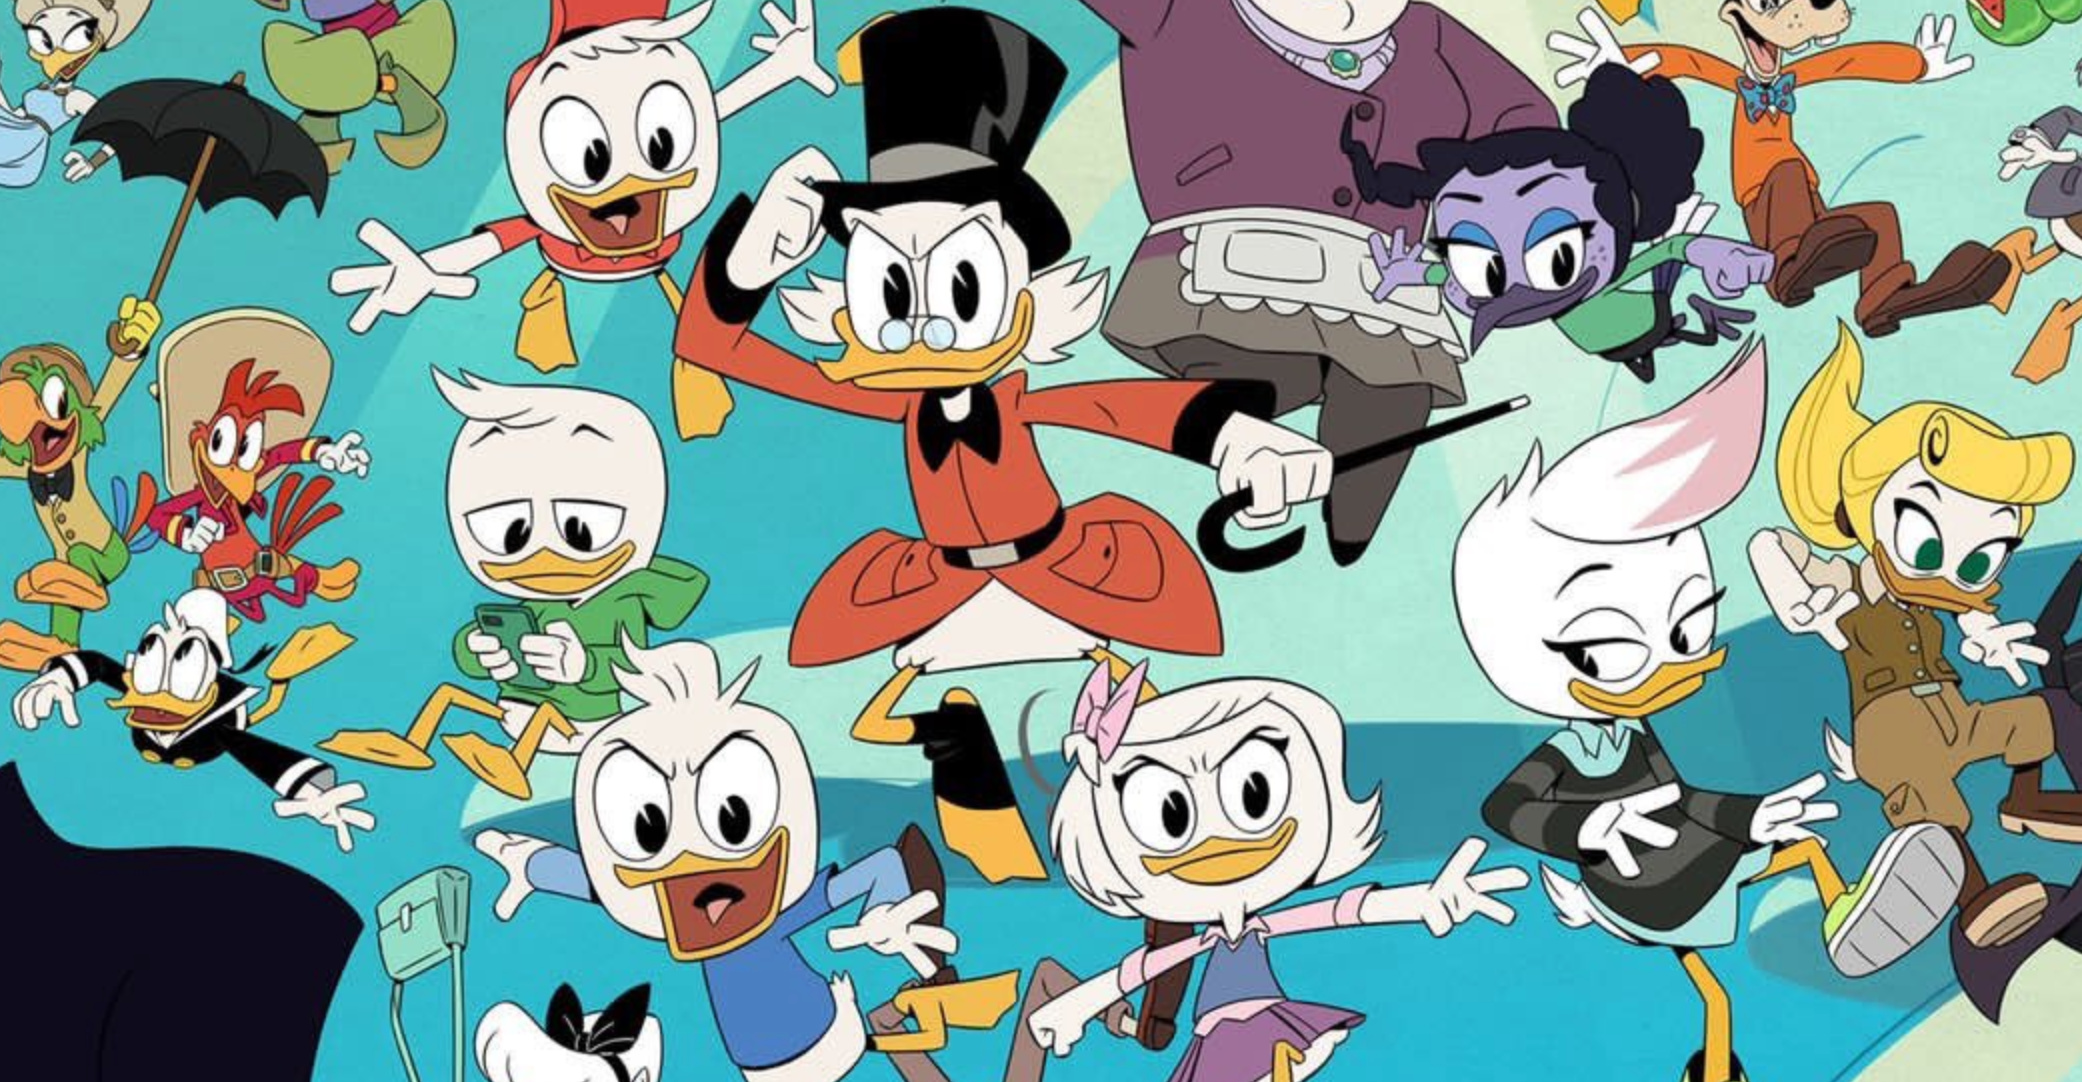 DuckTales Animation, Episode watch order, Den of Geek, Ducktales, 2090x1090 HD Desktop